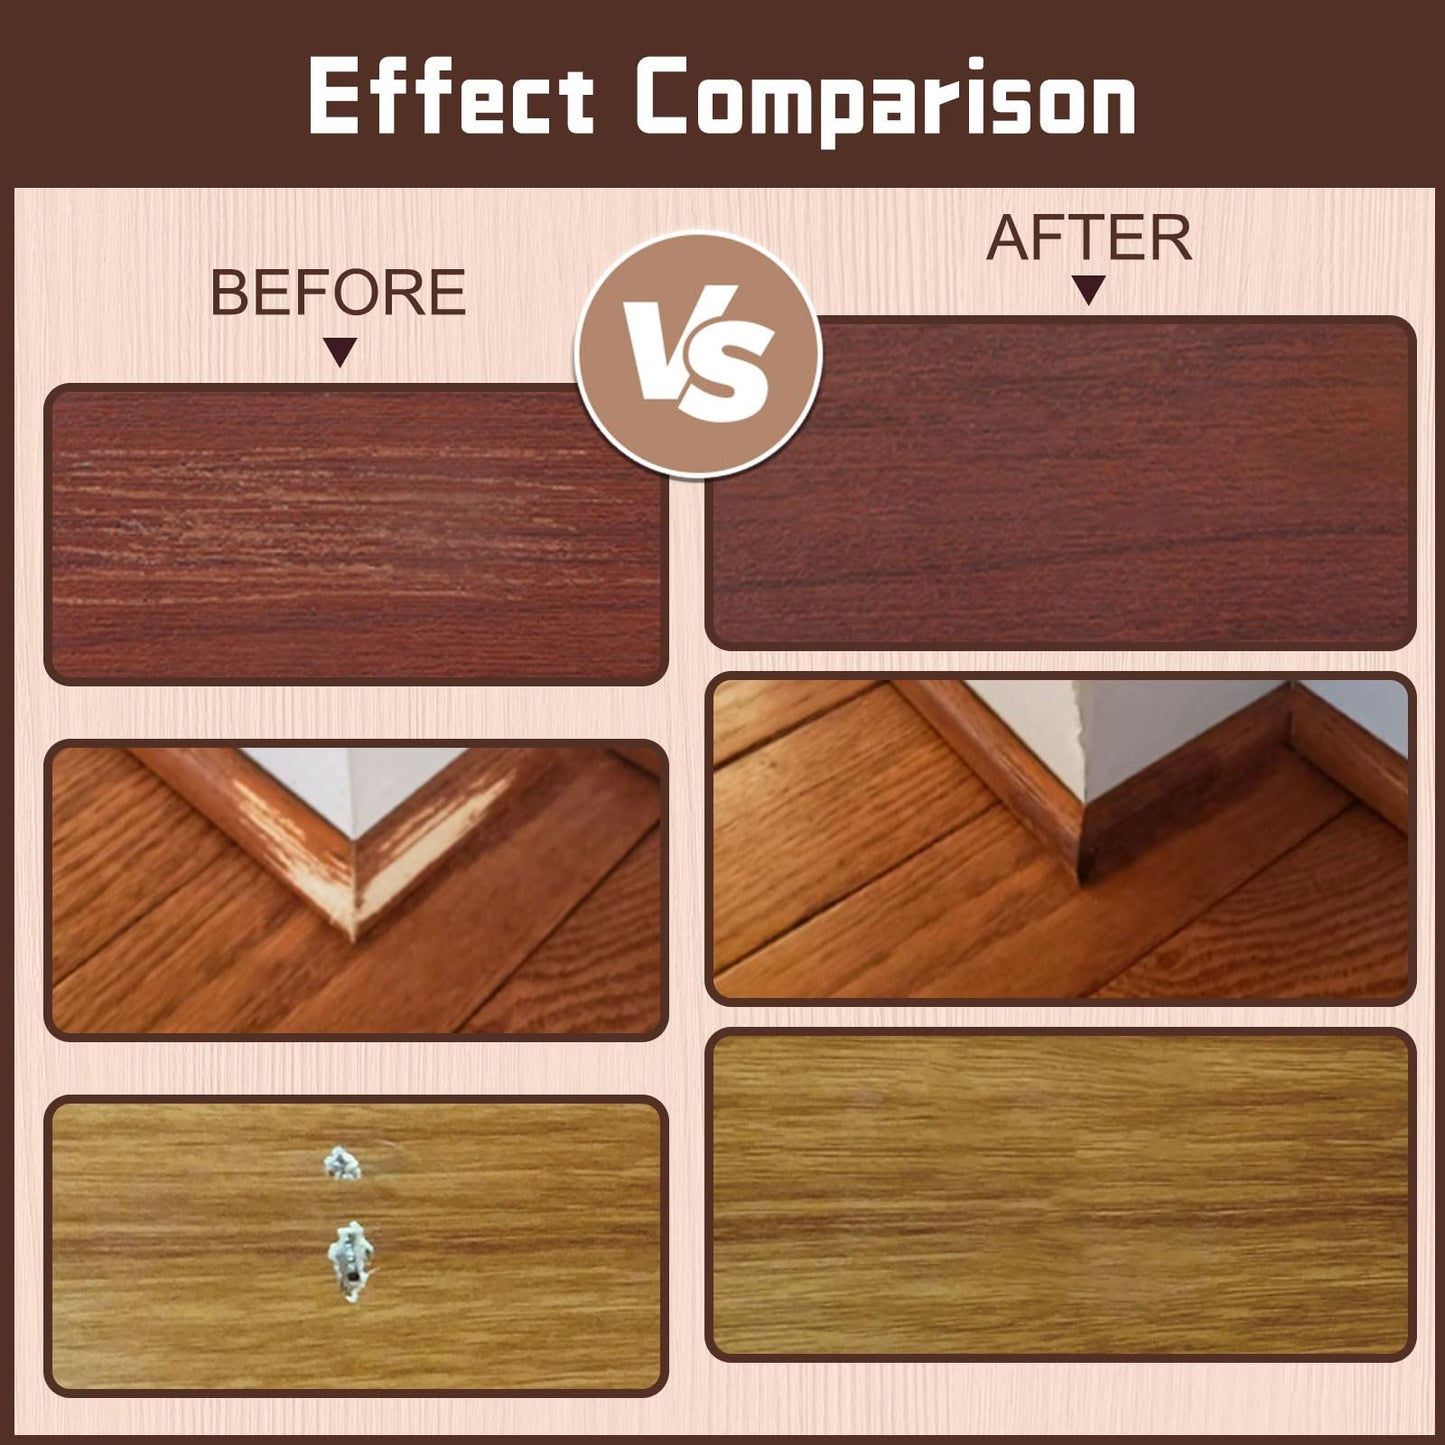 Hardwood Floor Repair Kit - 27PCS Wood Furniture Repair Kit, 8 Colors Wood Touch Up Markers & Wood Putty Filler,Wood Stain Pen, Laminate Repair Kit